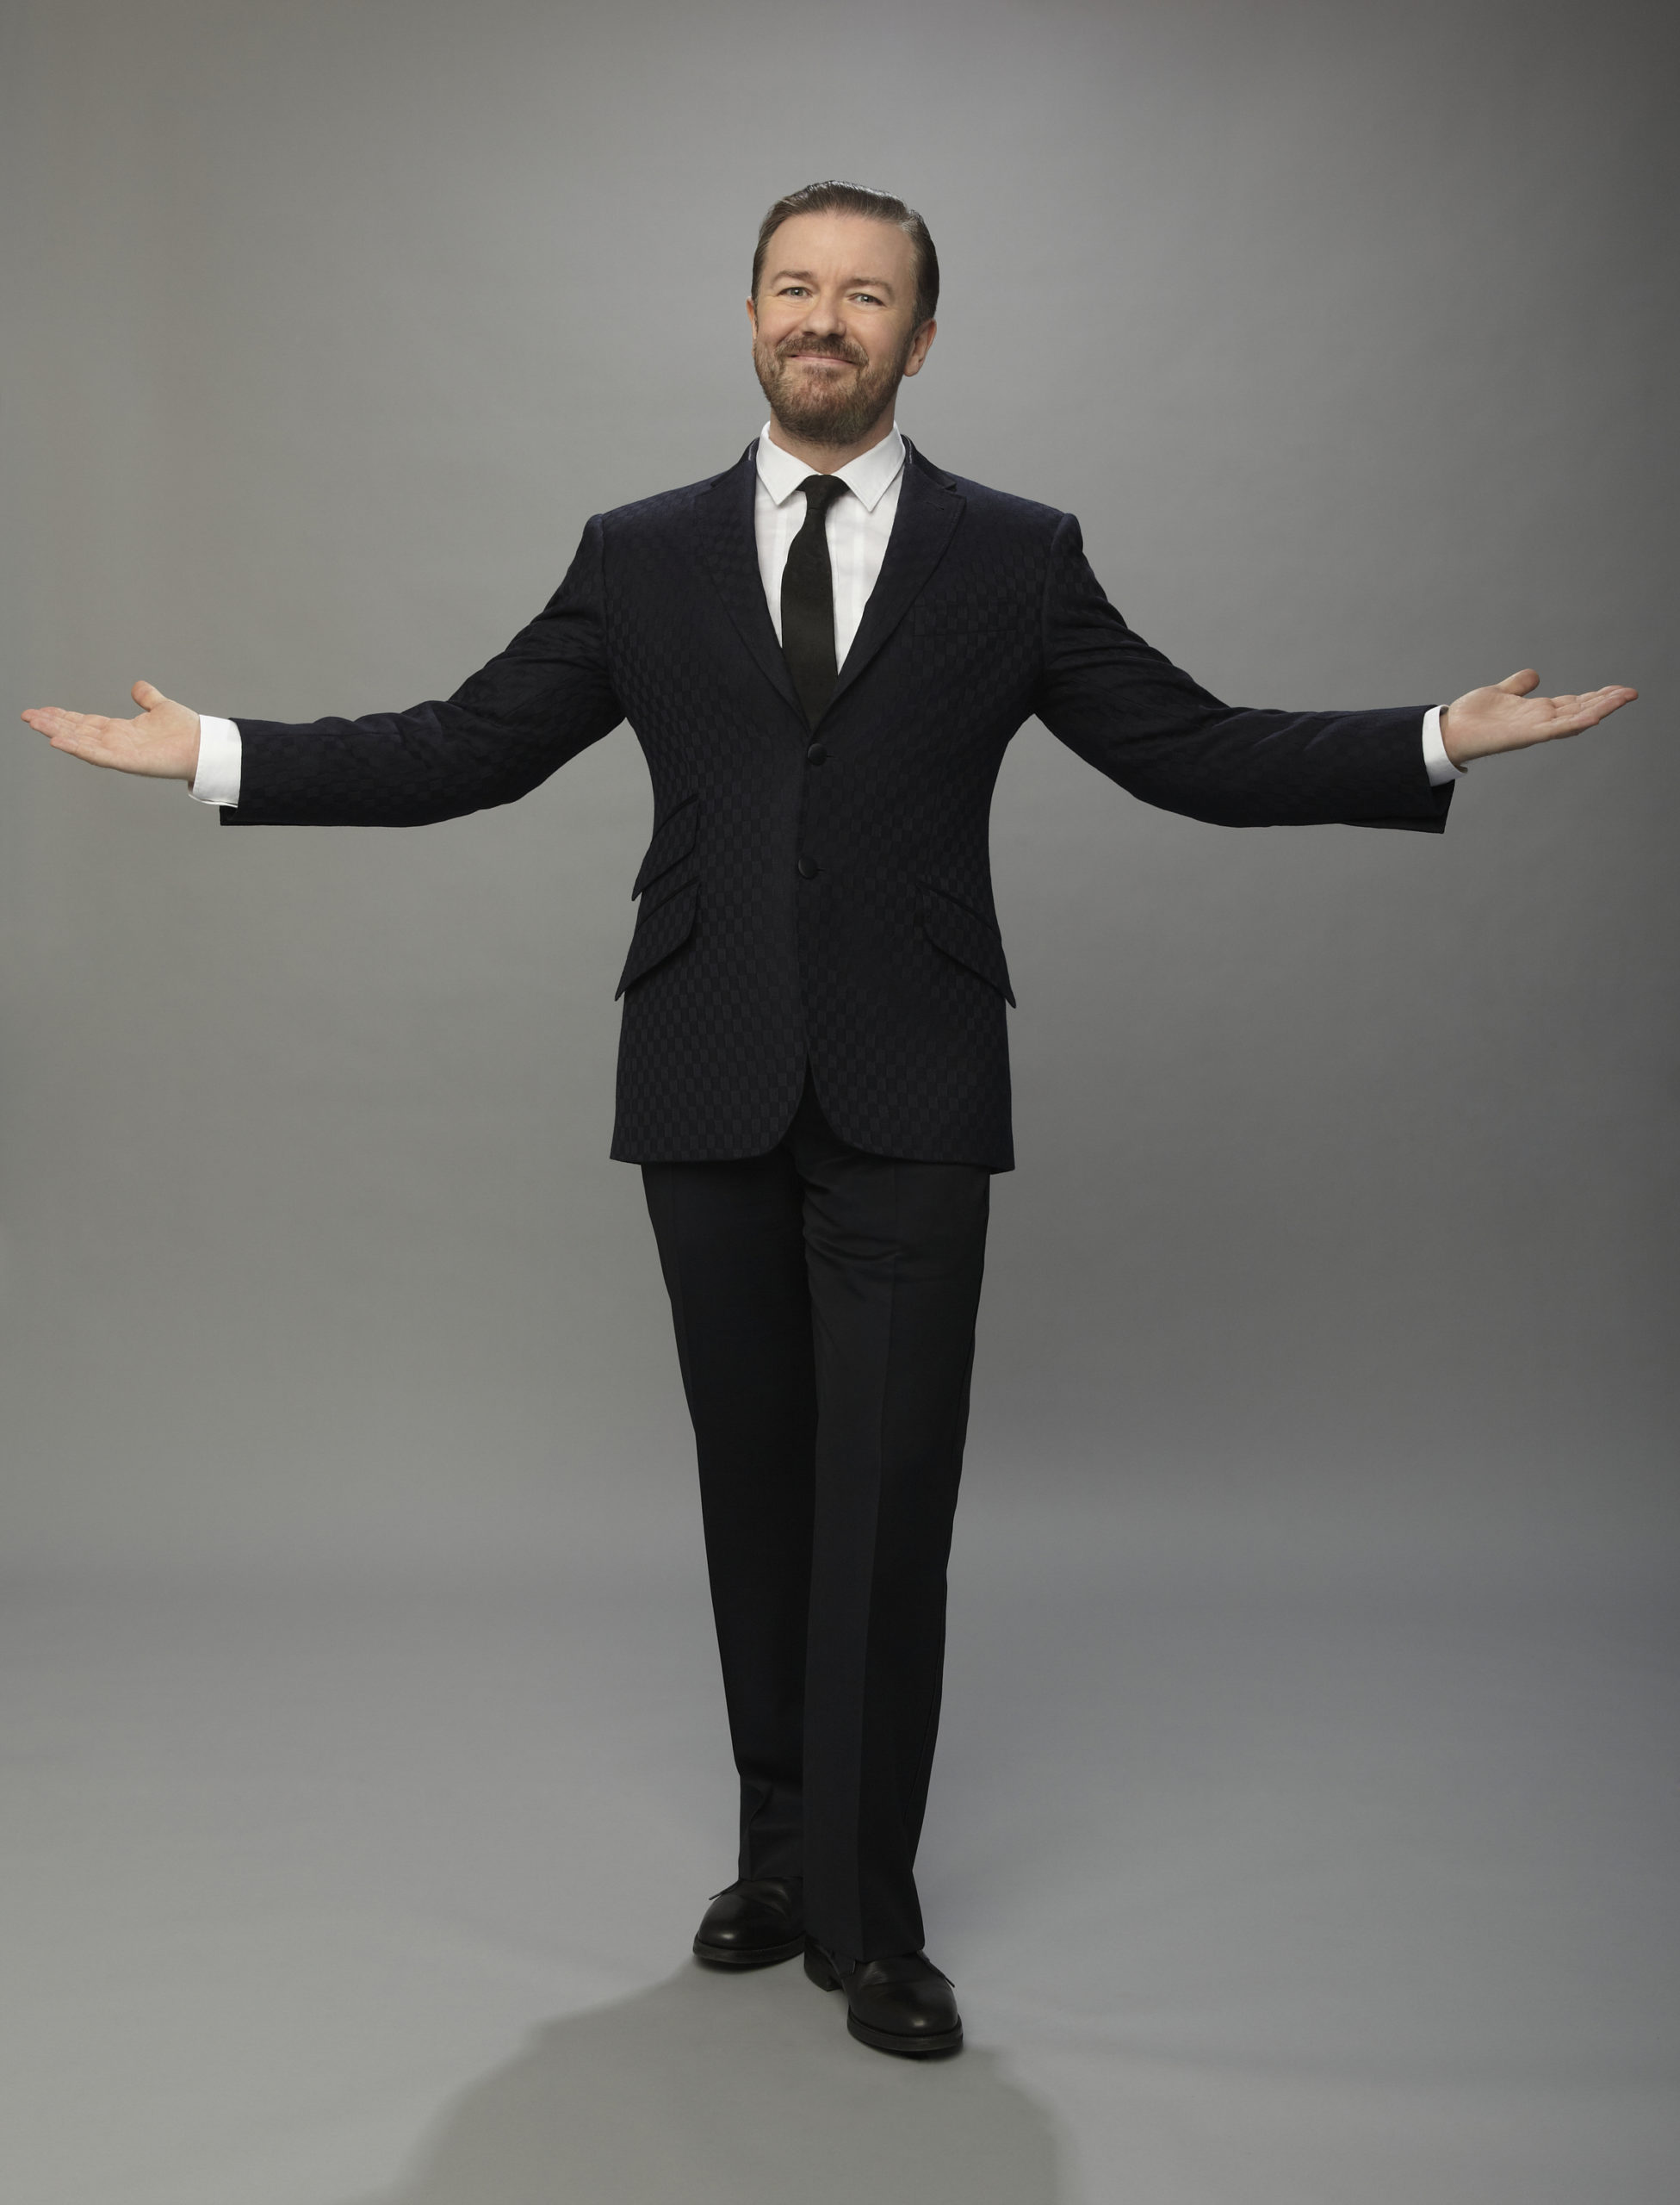 Golden Globes, Ricky Gervais